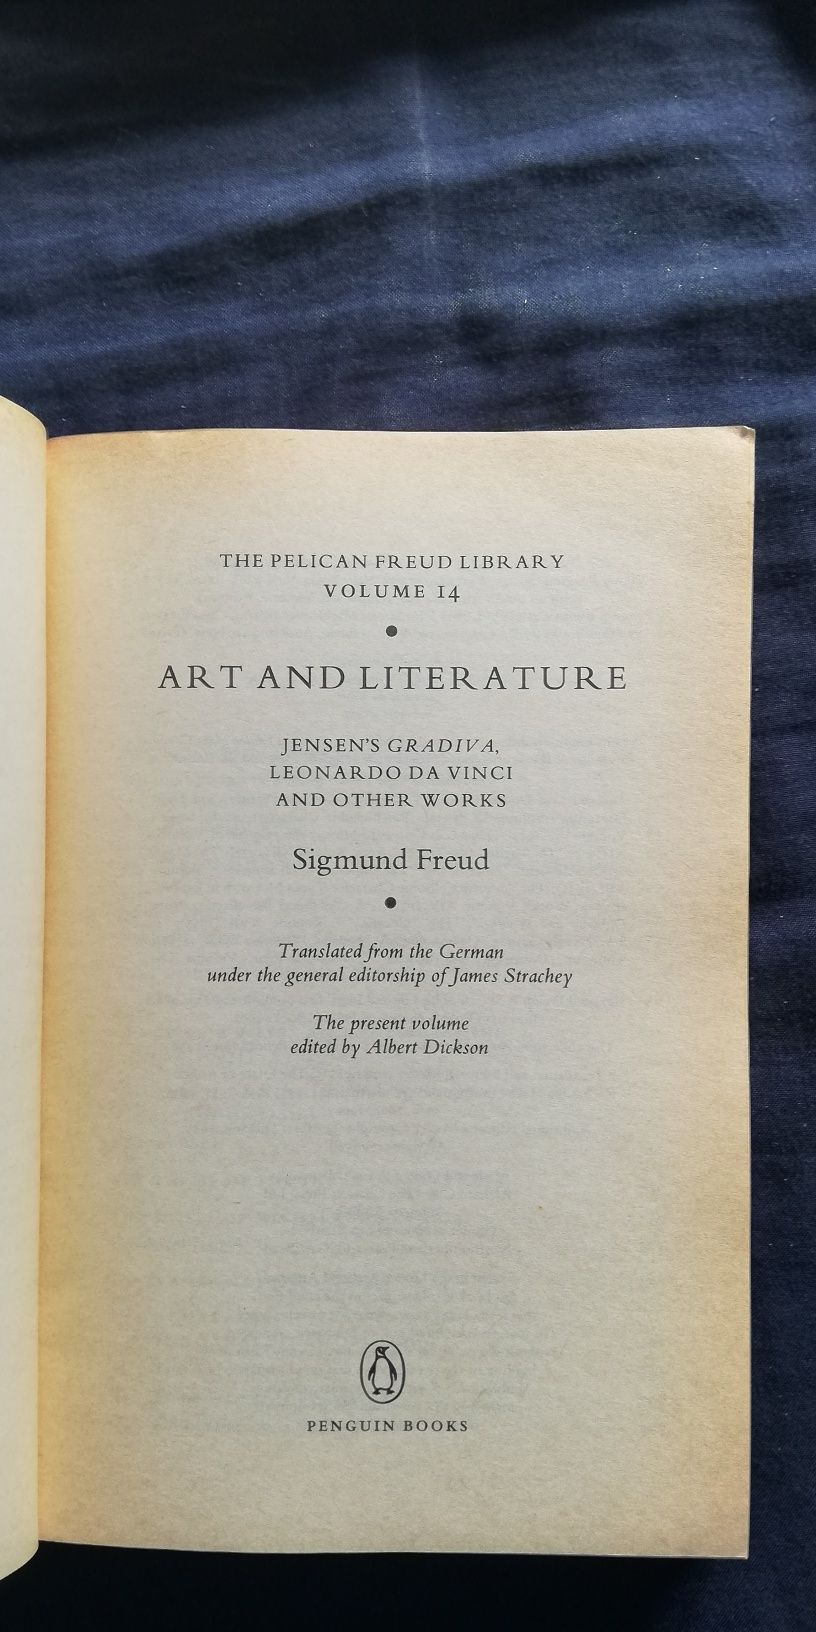 "Art and Literature", Sigmund Freud (portes grátis)